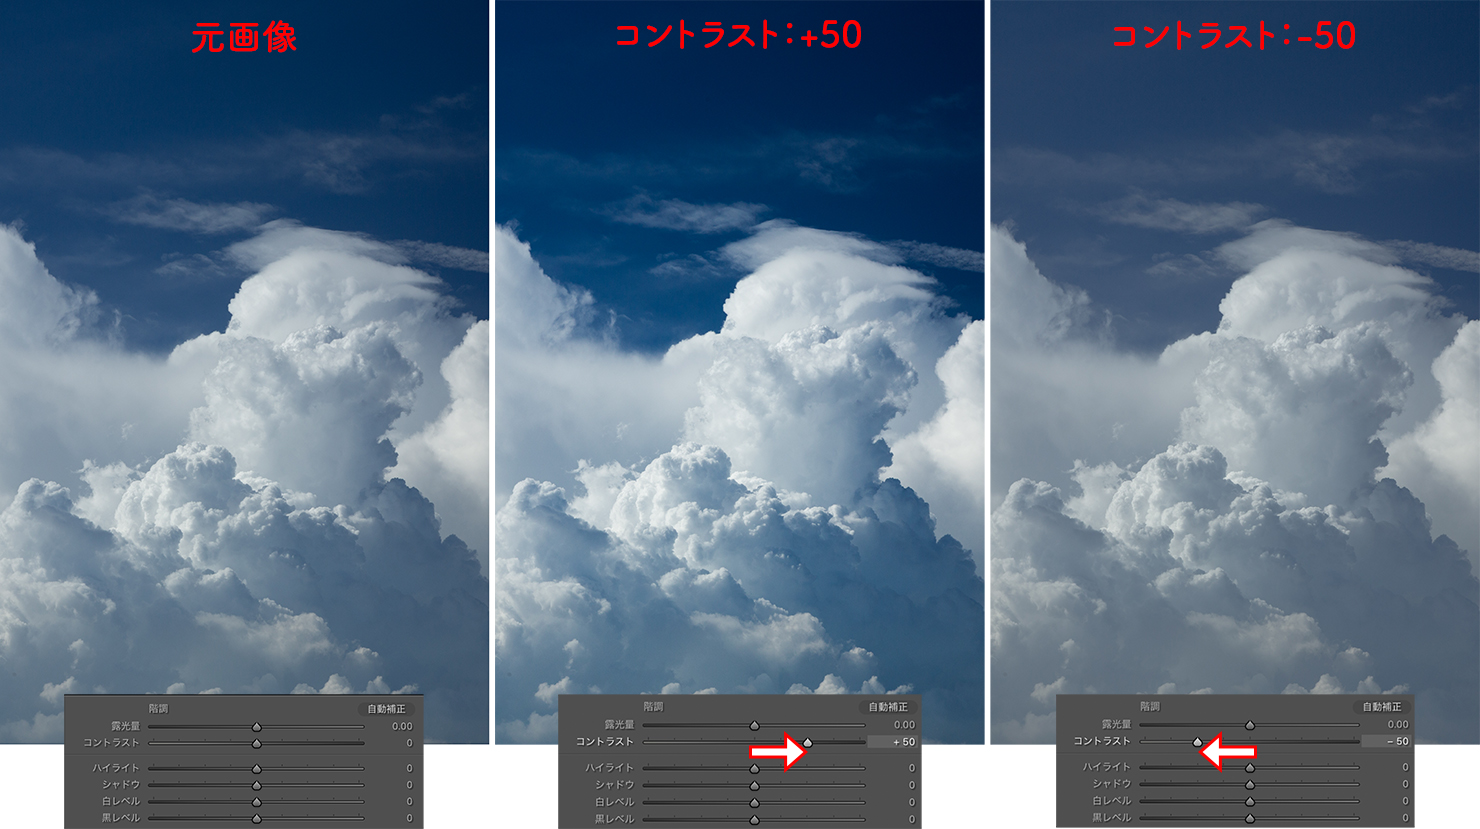 Lightroomでコントラストの数値を変えて画像の雲の写真の明るさを比較した図